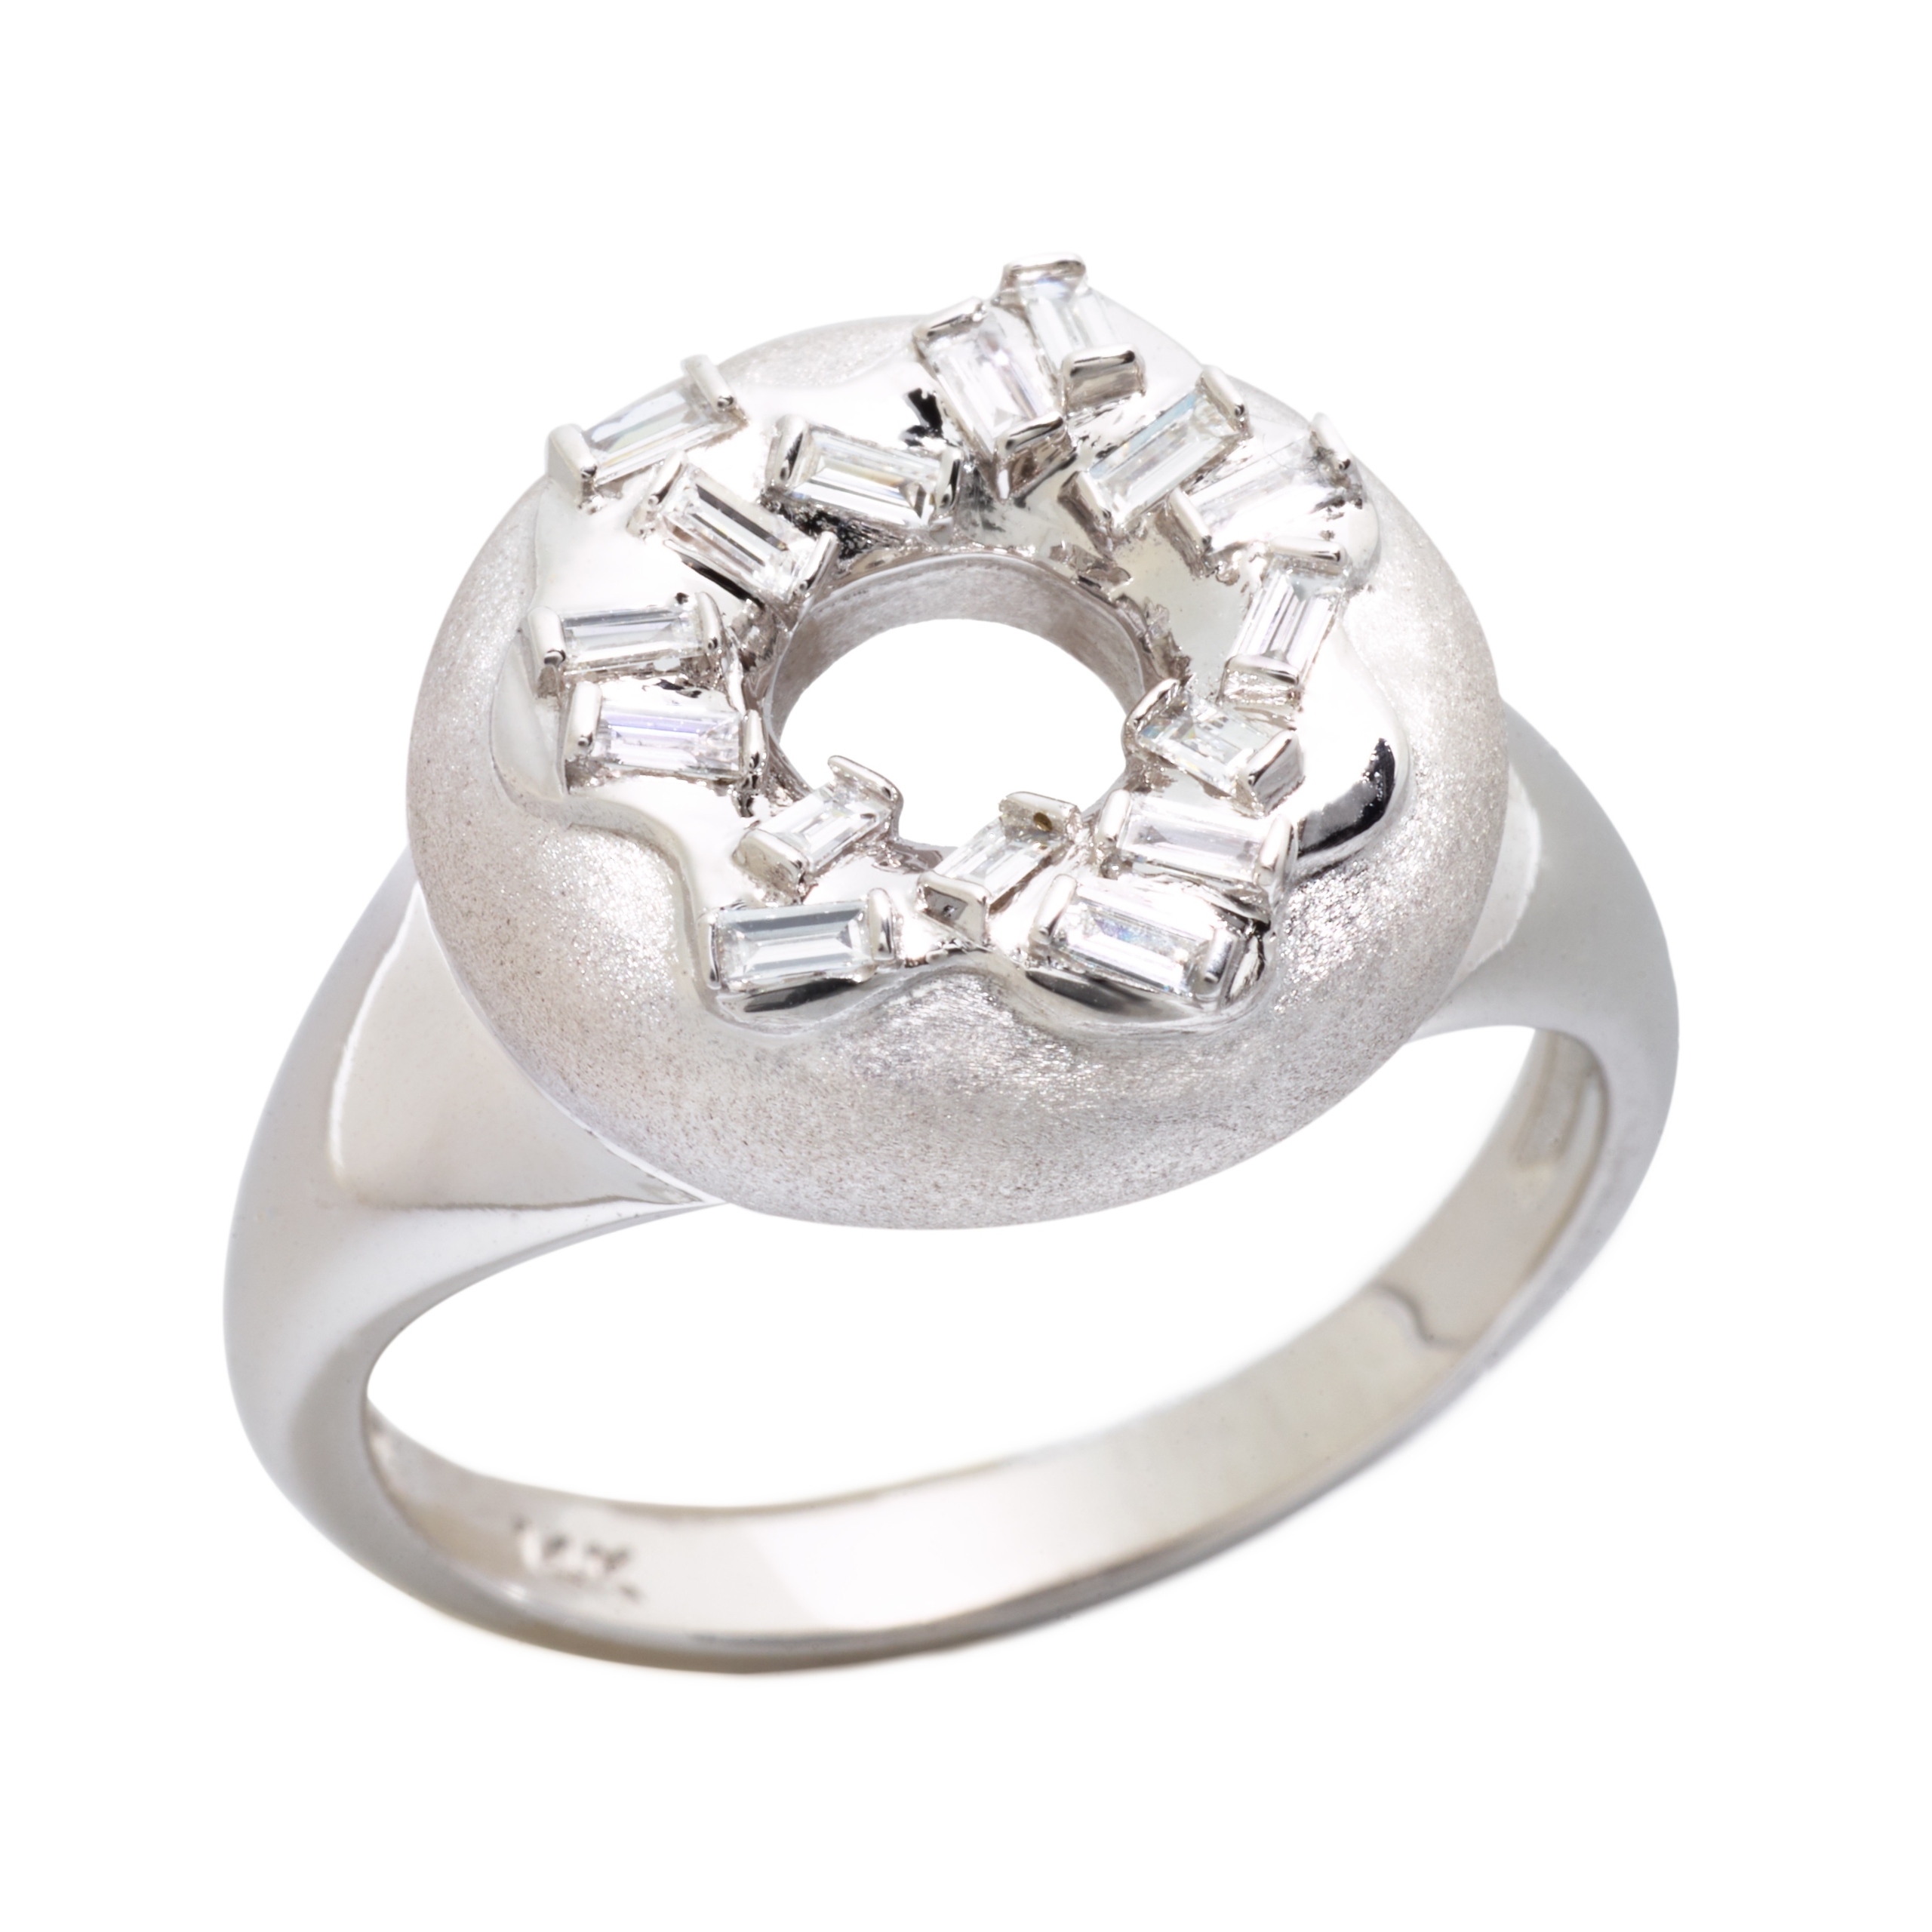 Sprinkle Doughnut Ring, 14K White Gold & Diamonds - Delicacies